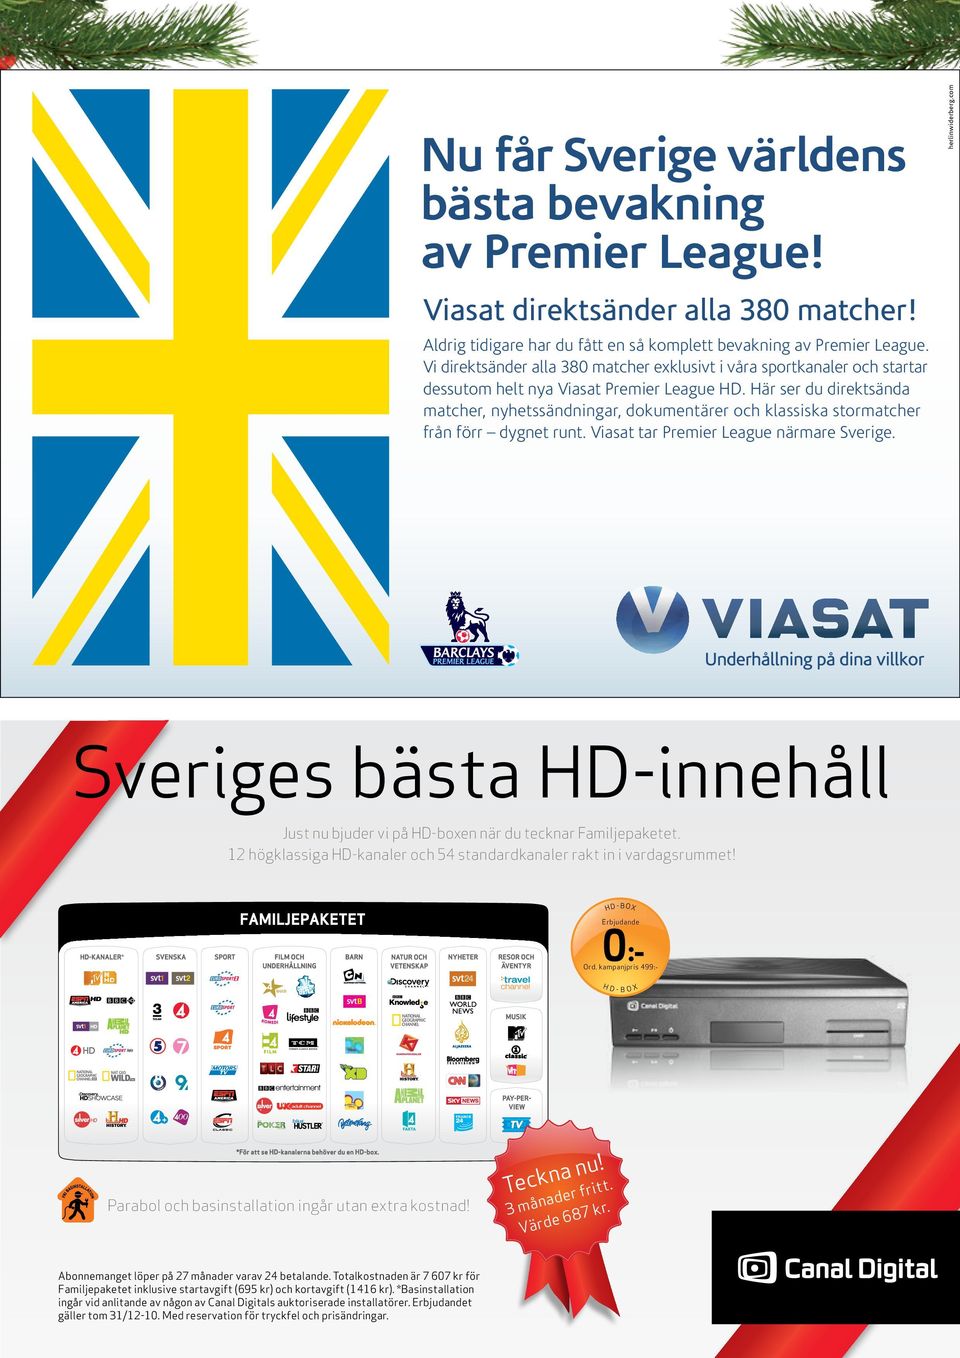 Här ser du direktsända matcher, nyhetssändningar, dokumentärer och klassiska stormatcher från förr dygnet runt. Viasat tar Premier League närmare Sverige. herlinwiderberg.